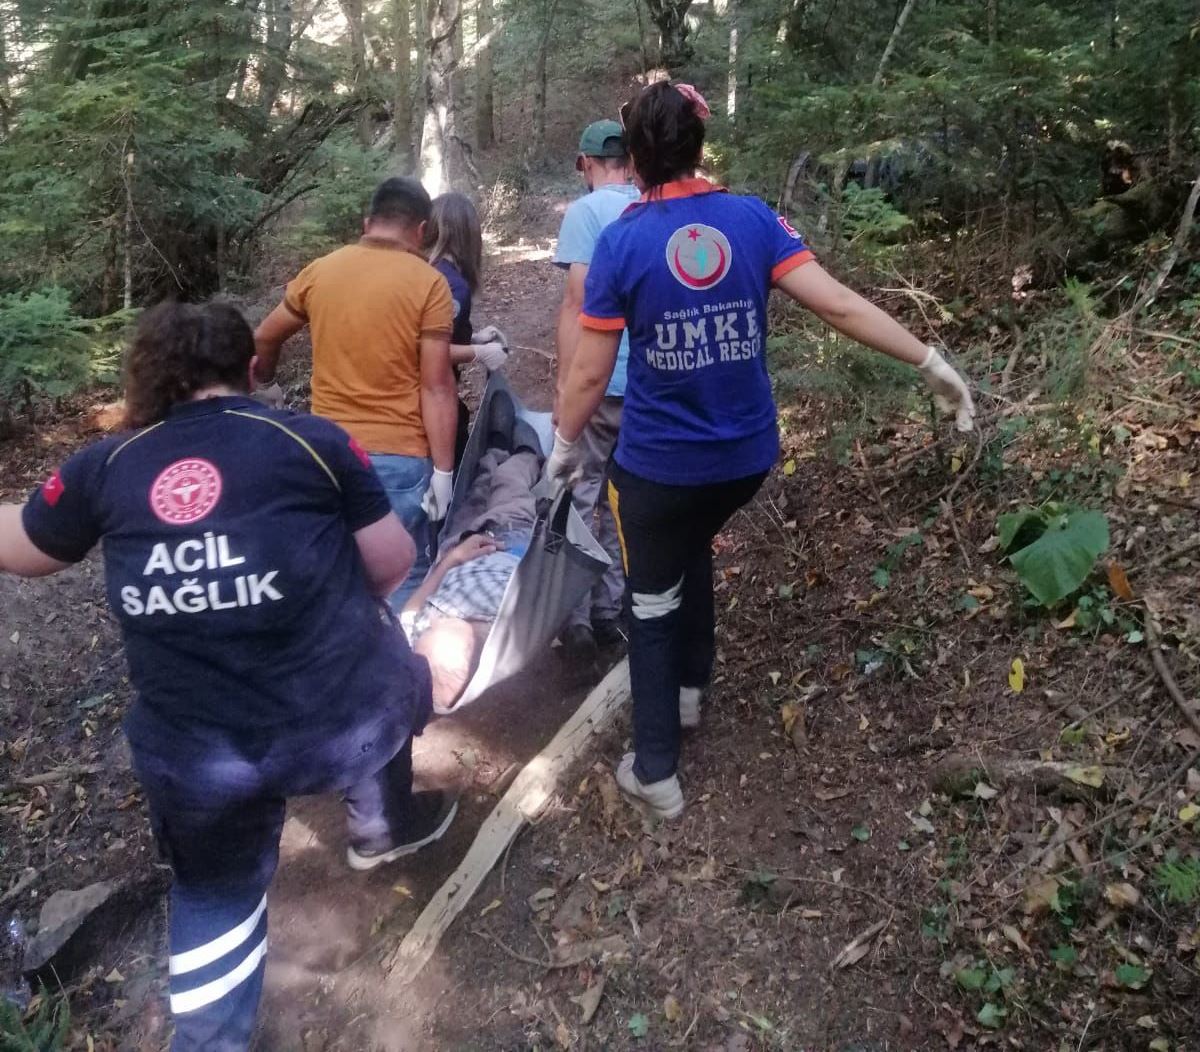 Bolu'da ormanda rahatsızlanan kişi ambulansa sedyeyle 1 kilometre taşındı